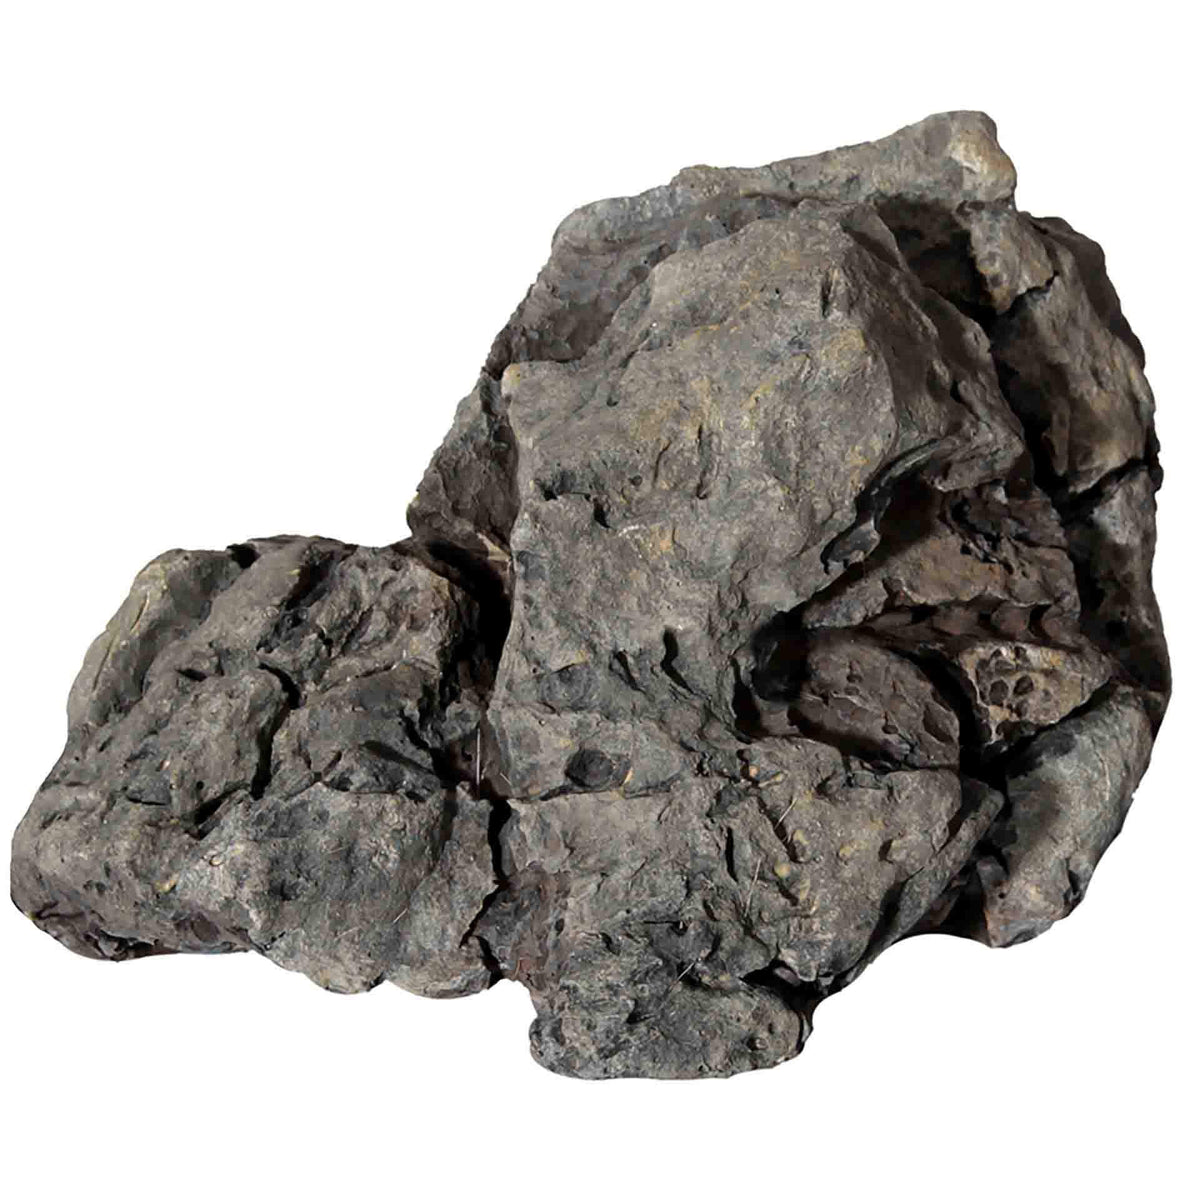 Aqua One Basalt Rock Small 15 x 10 x 8.7cm - Rock Ornament